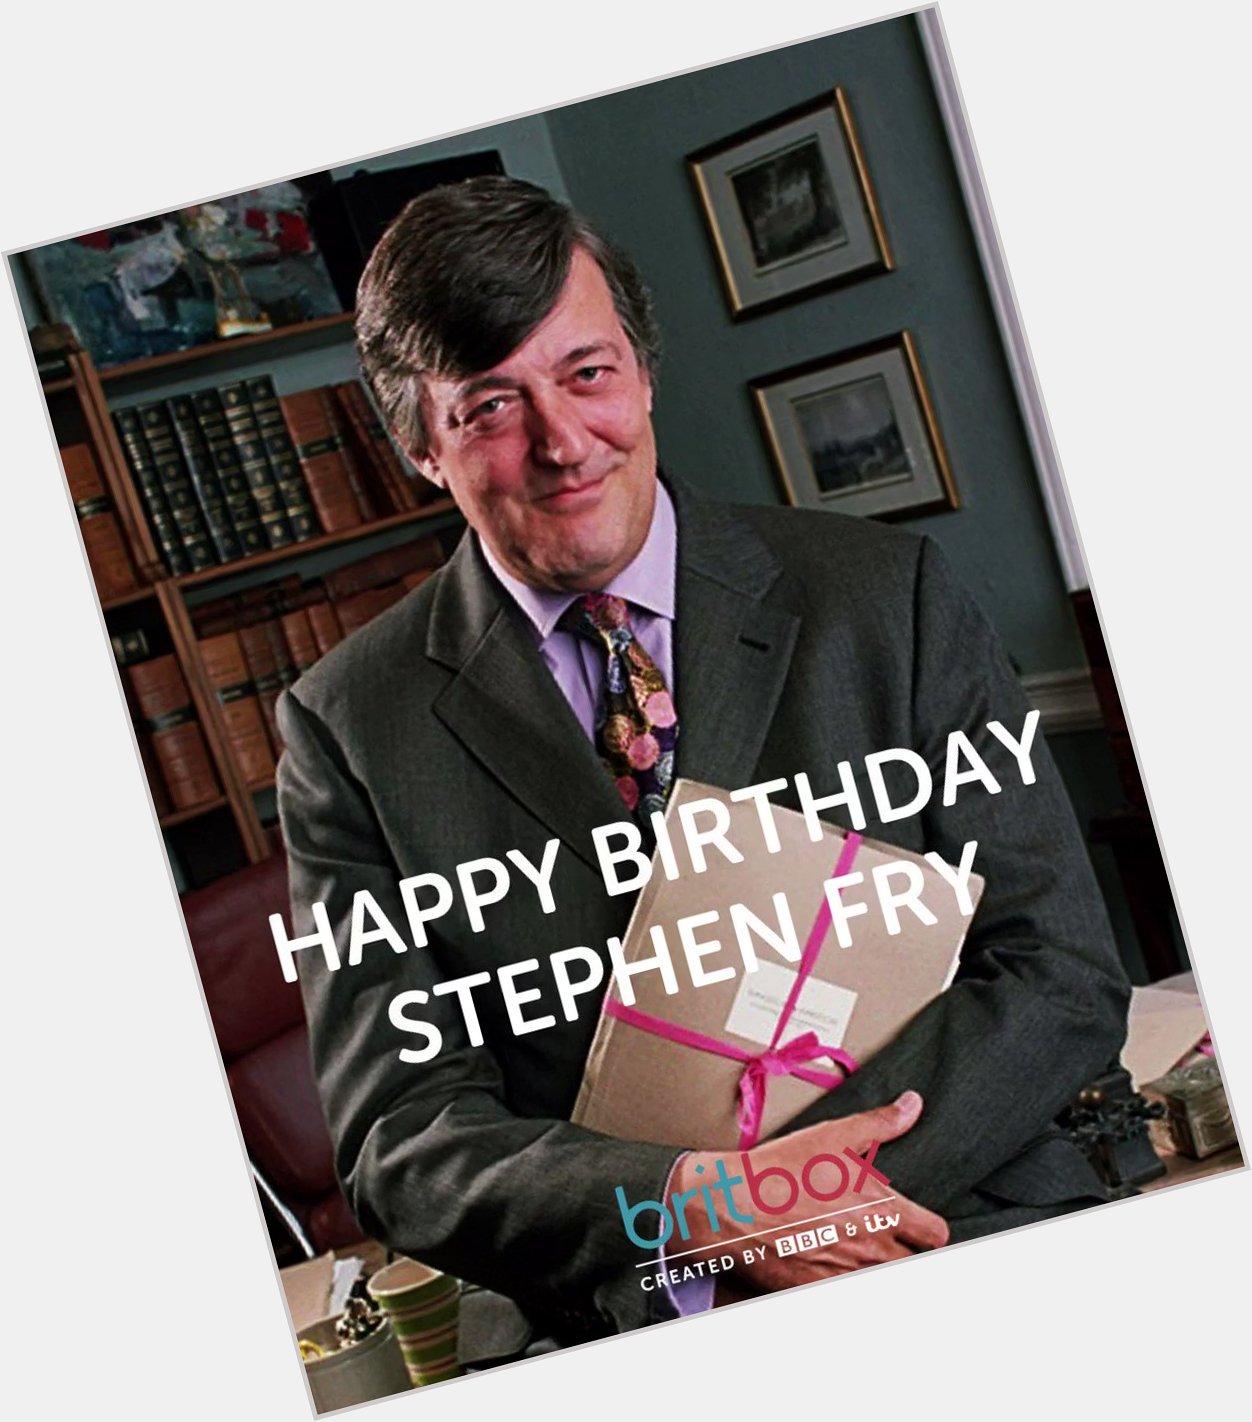 Happy Birthday, Stephen Fry 